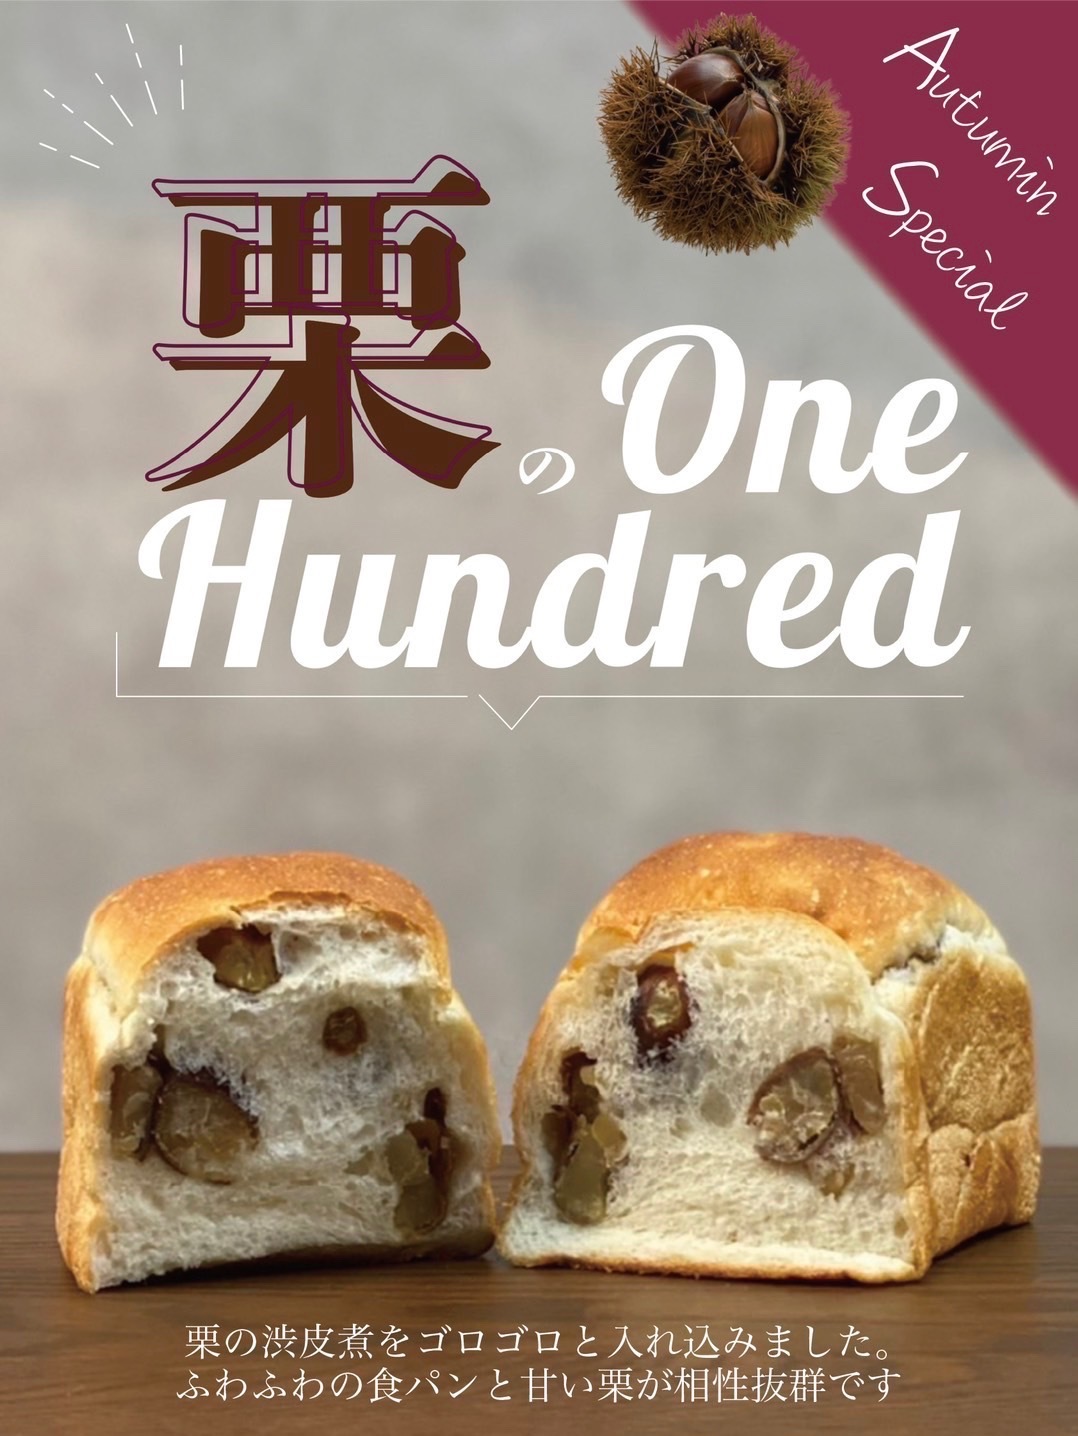 秋限定！世界初のふわふわ食パンを使用した
「栗のワンハンドレッド」全国の“One Hundred Bakery”と
“Espresso D Works”で9月1日から販売開始